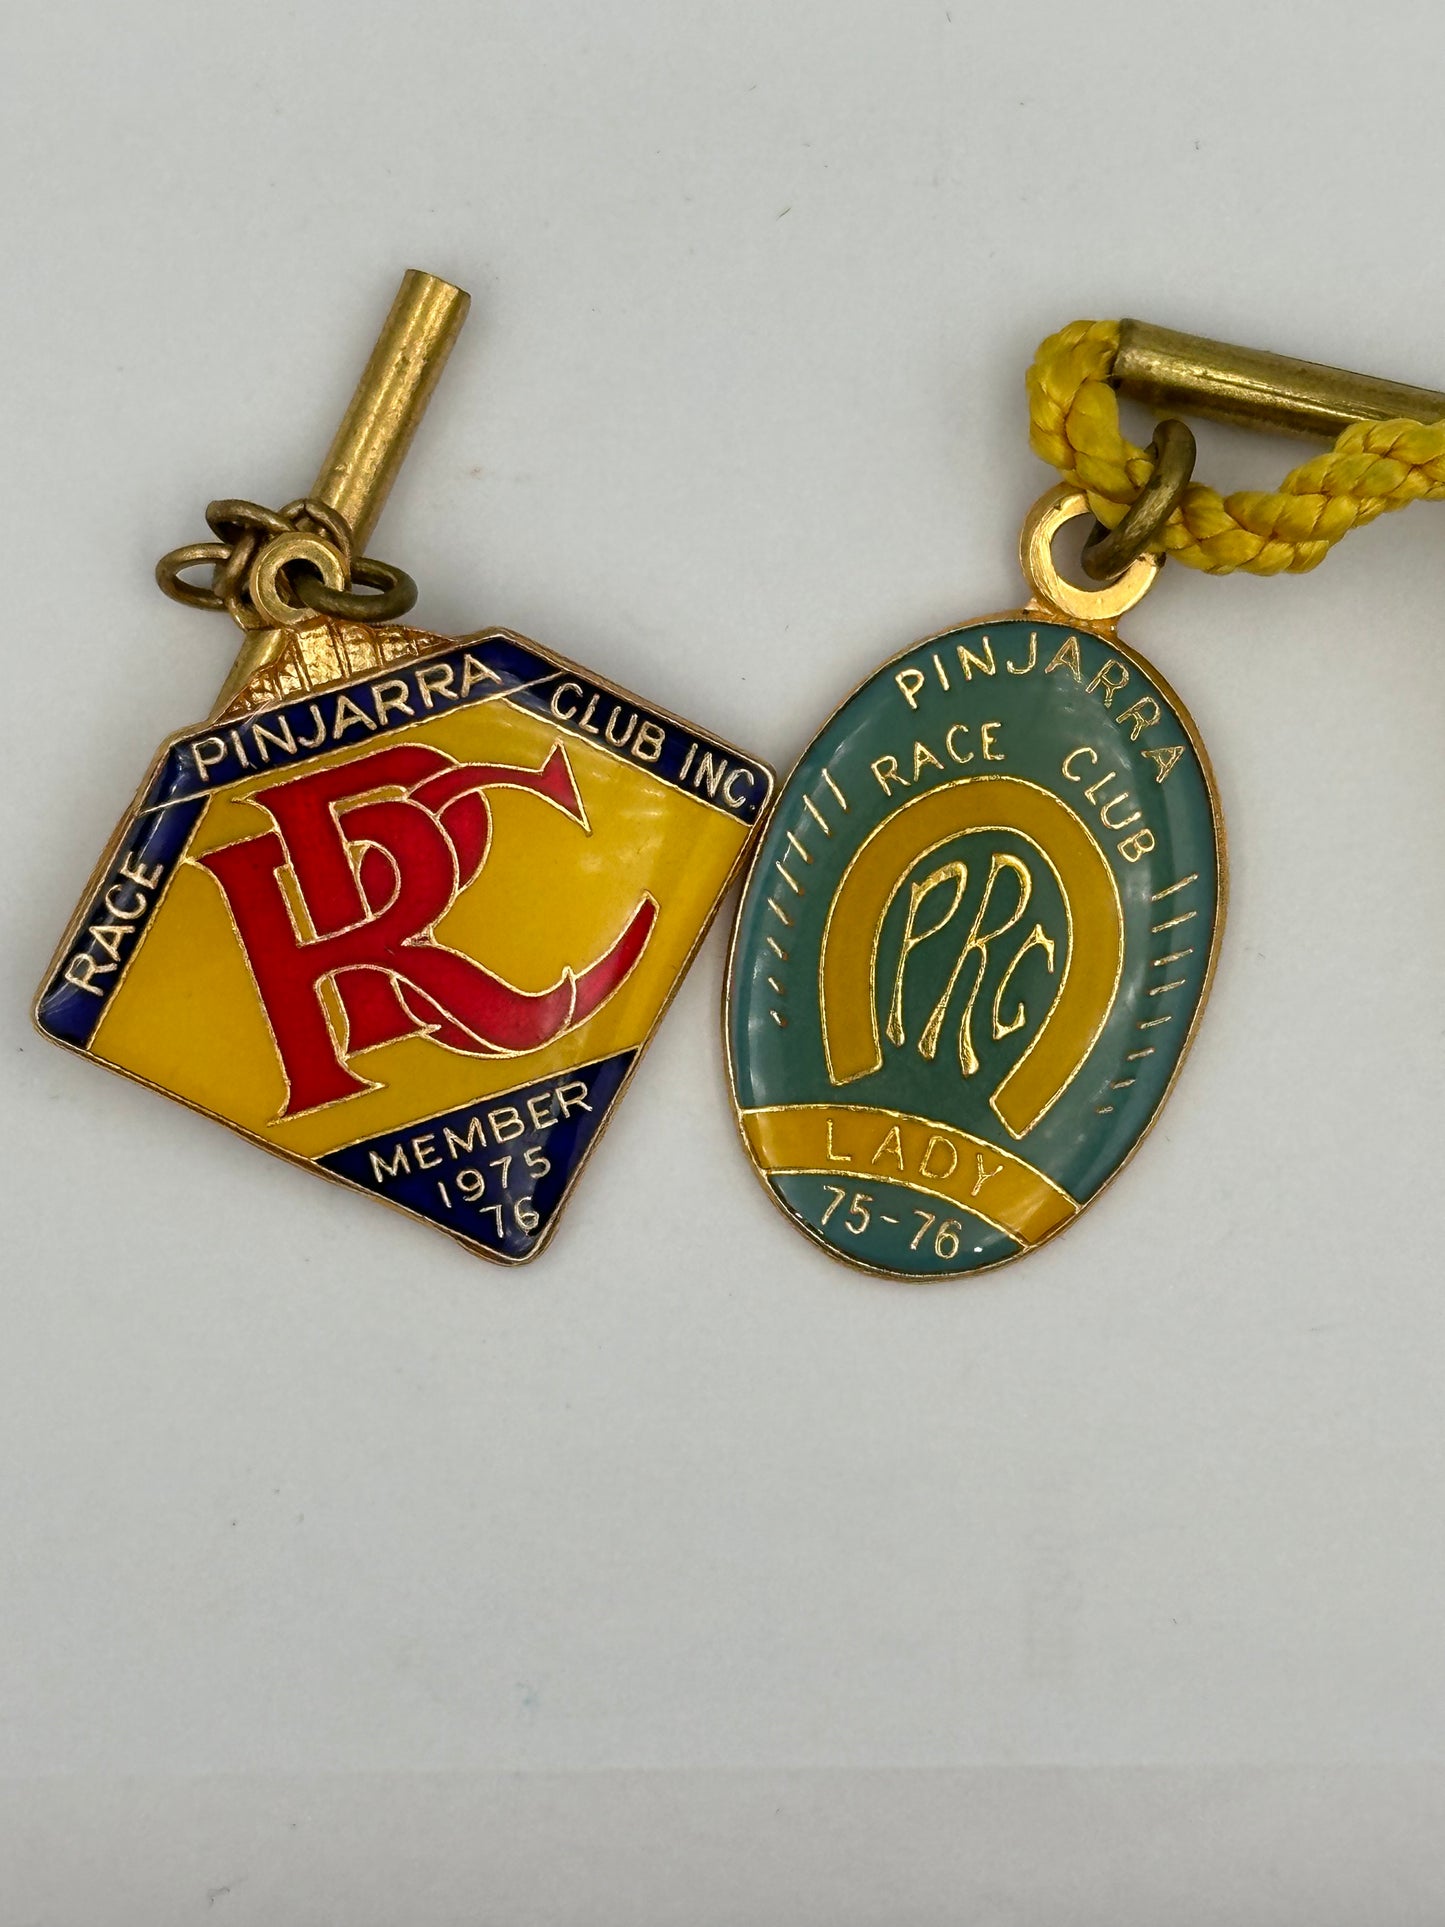 Vintage 1975-1976 Pinjarra Race Club Enamel Member Badge & Lady Badge